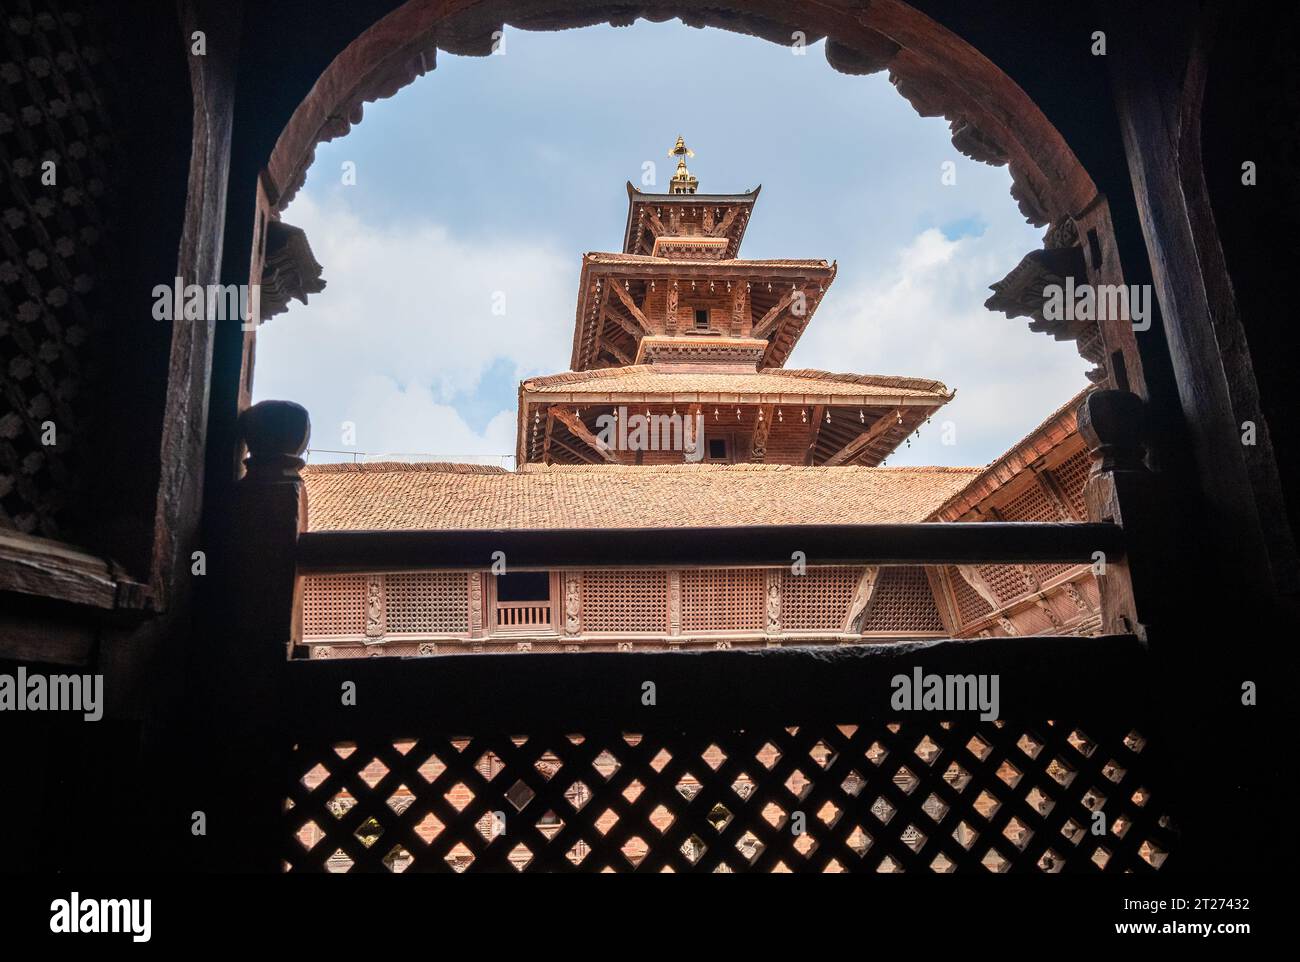 Véritable chef-d'œuvre d'architecture vue sur le vieux temple à travers la fenêtre en bois sculpté, Patan Durbar Square palais royal médiéval et site du patrimoine mondial de l'UNESCO Banque D'Images